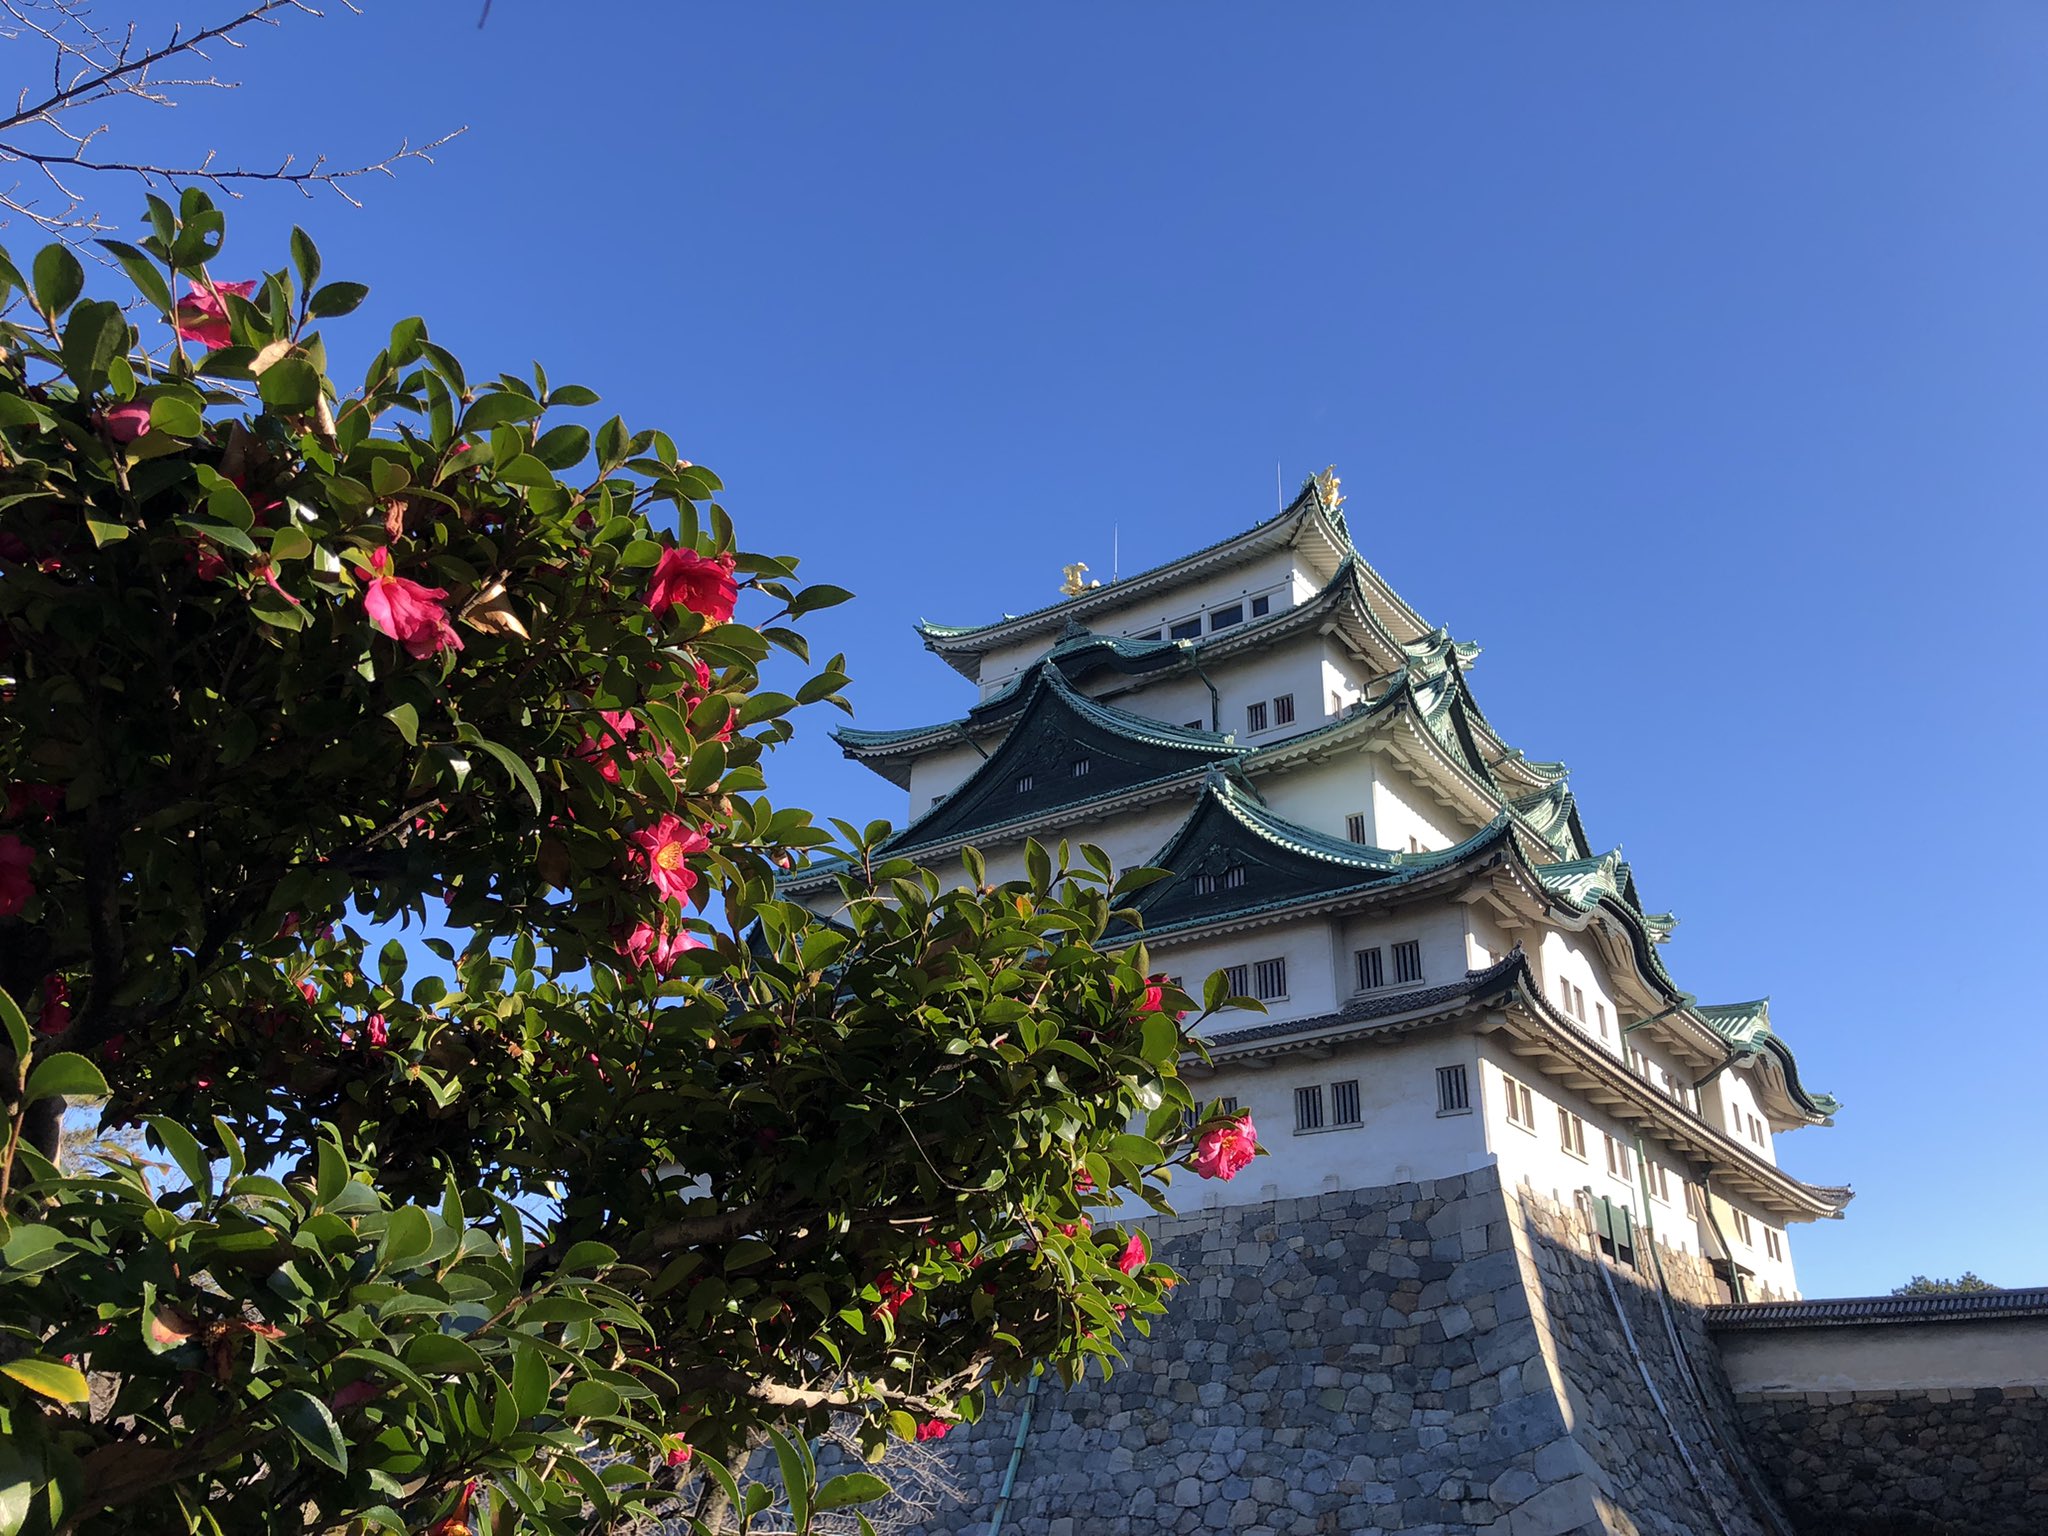 名古屋城 Nagoya Castle Citynagoyajo Twitter